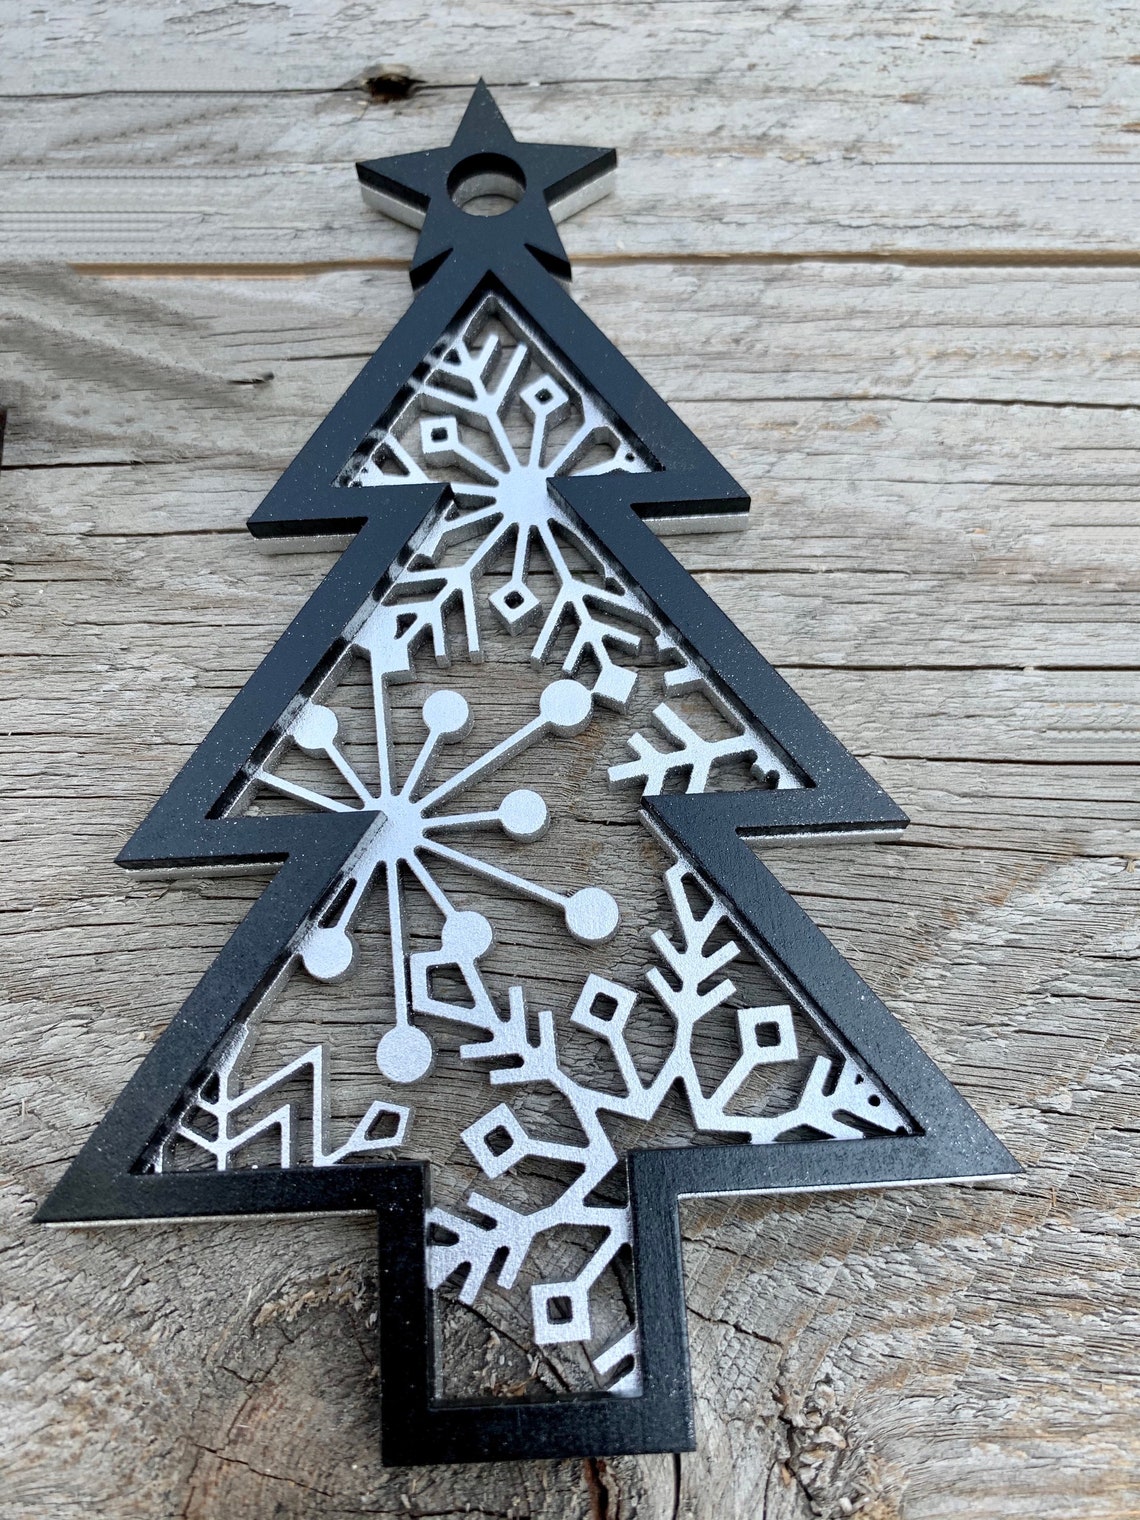 Plaid Christmas Tree 3 Layered Ornament SVG Glowforge | Etsy